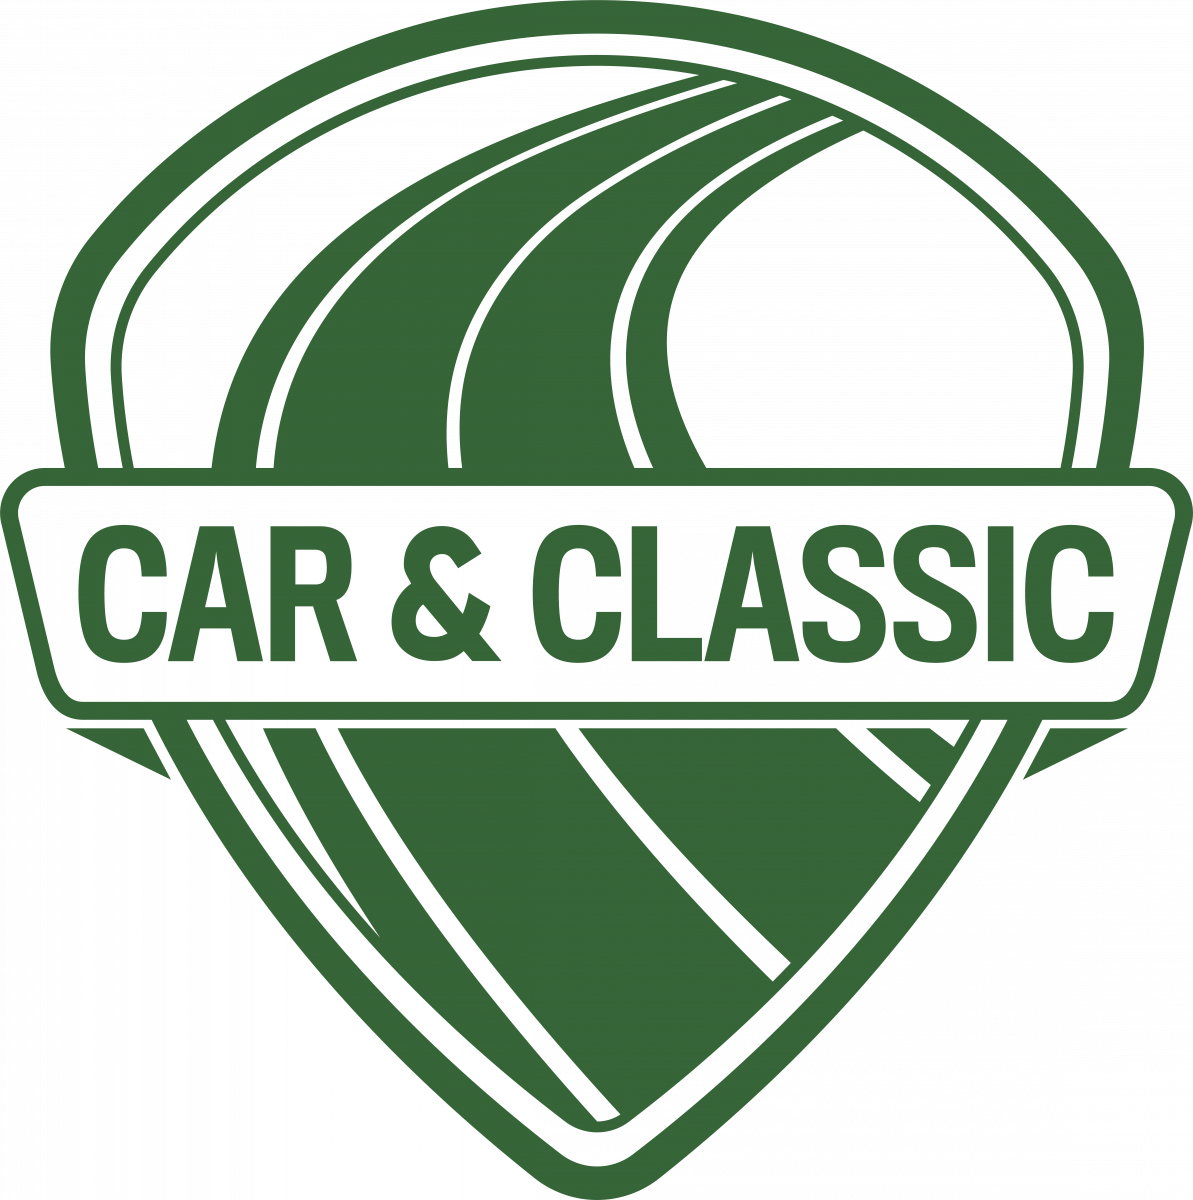 Car & Classic